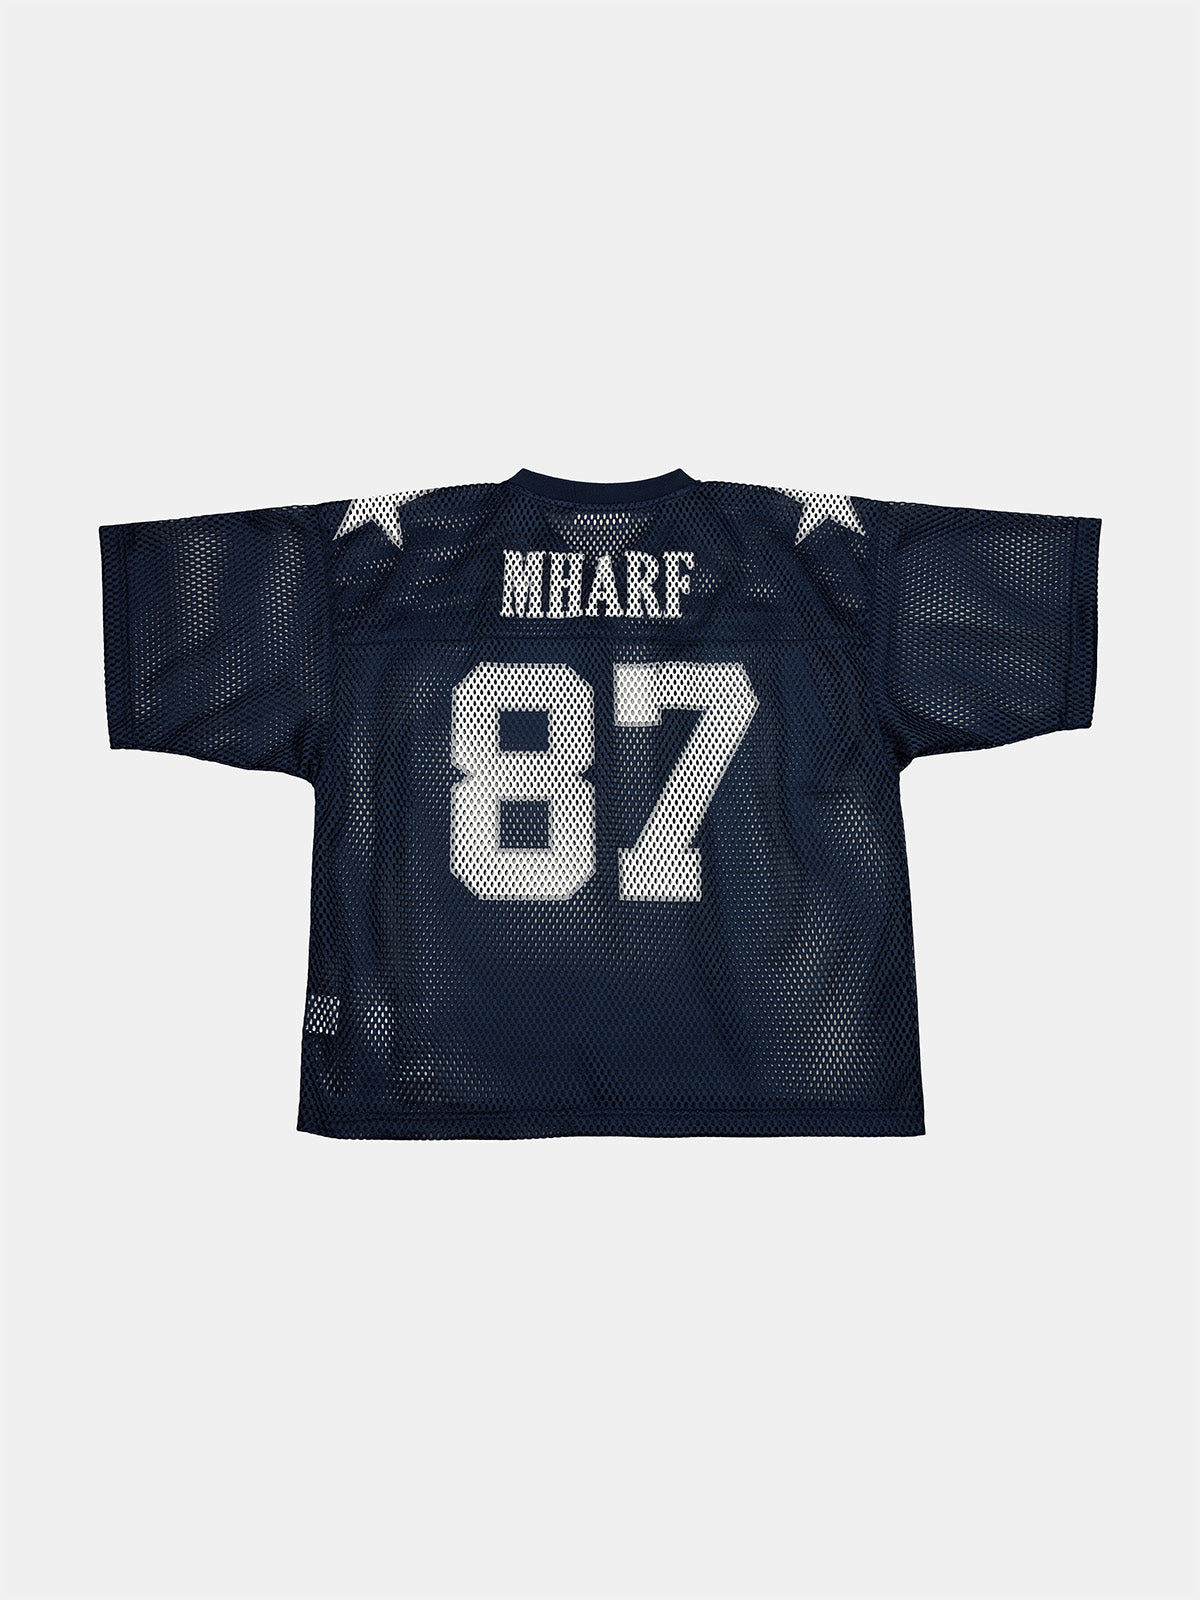 MHARF 87 Star Logo Vintage Mesh Uniform Hockey Jersey | Face 3 Face